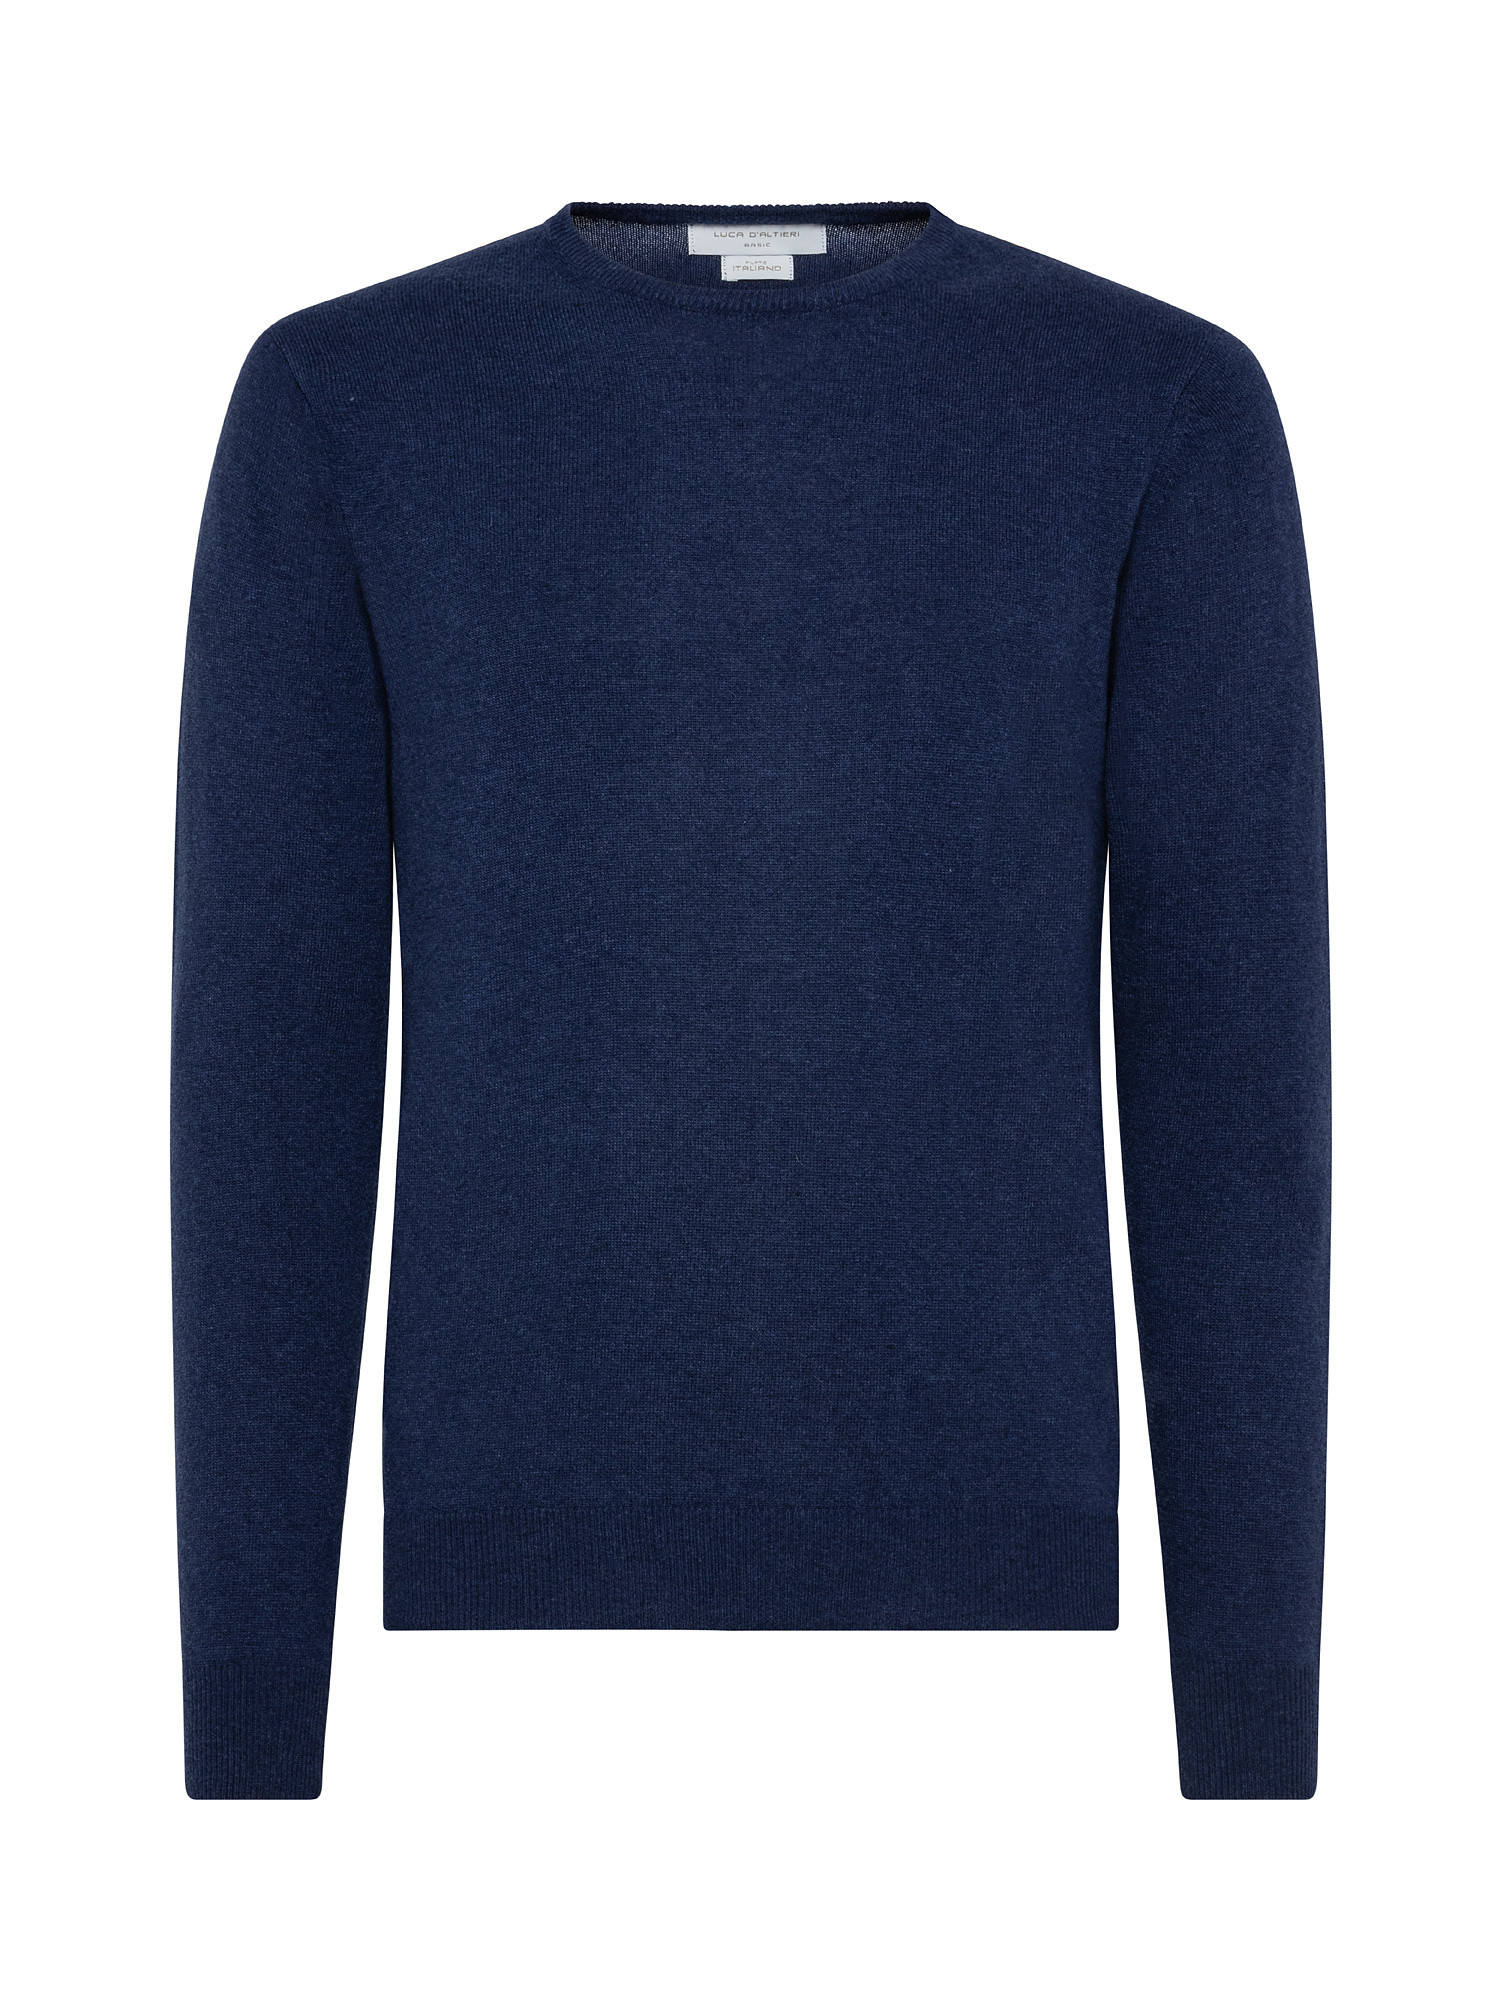 Basic cashmere blend pullover, Dark Blue, large image number 0